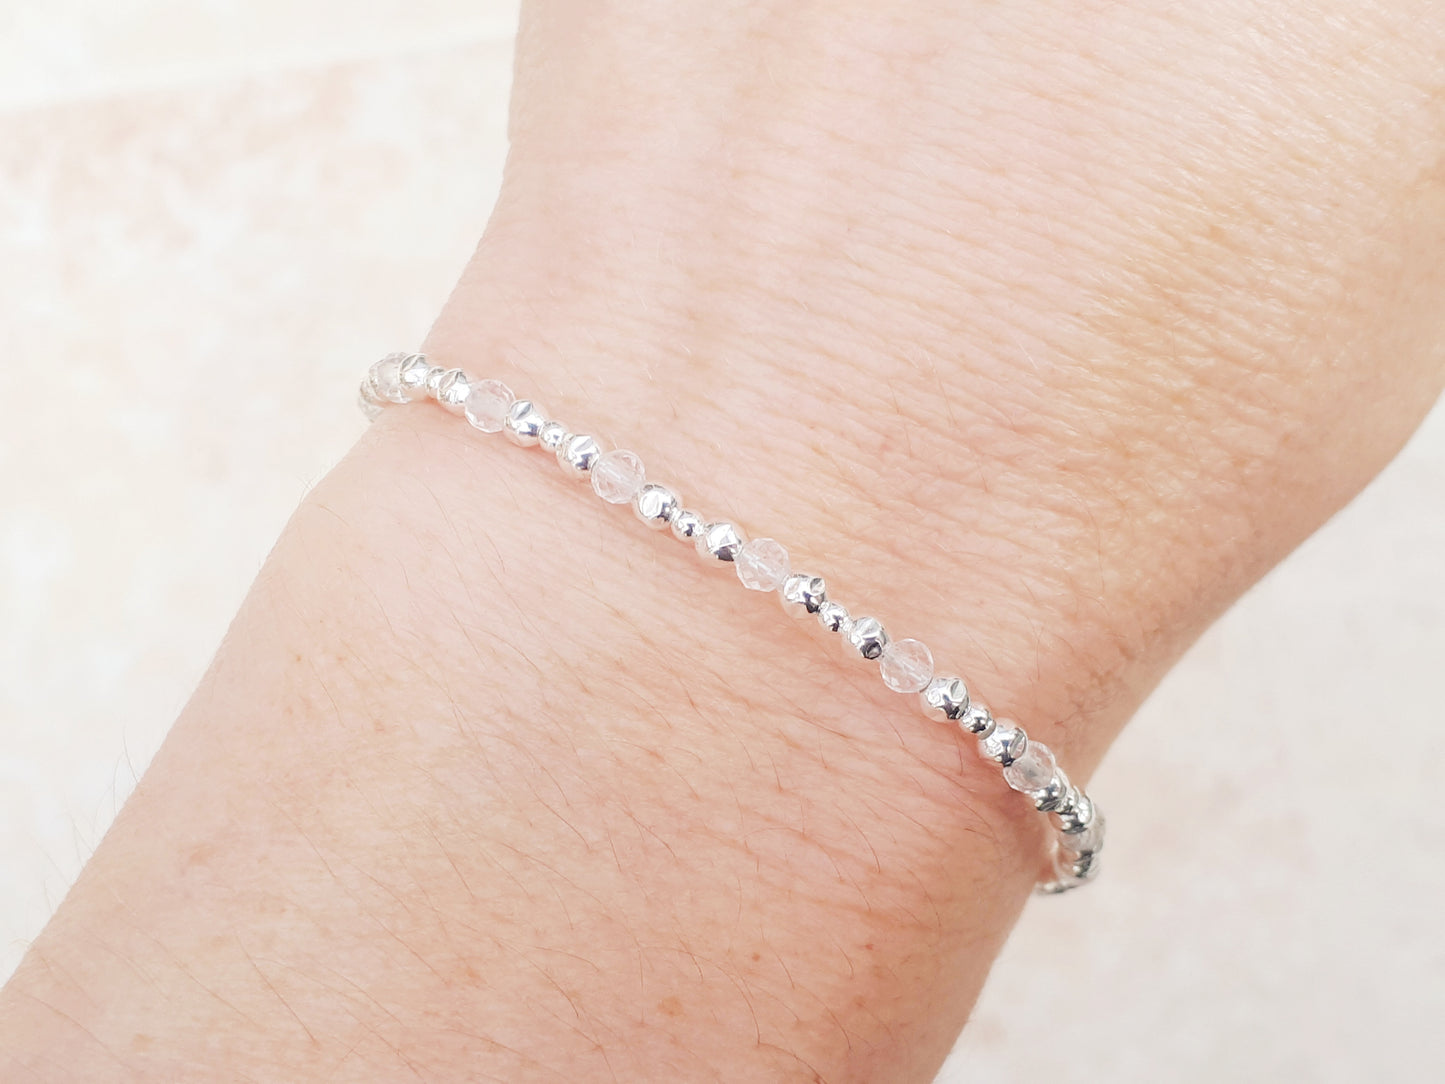 Crystal quartz bracelet in sterling silver.